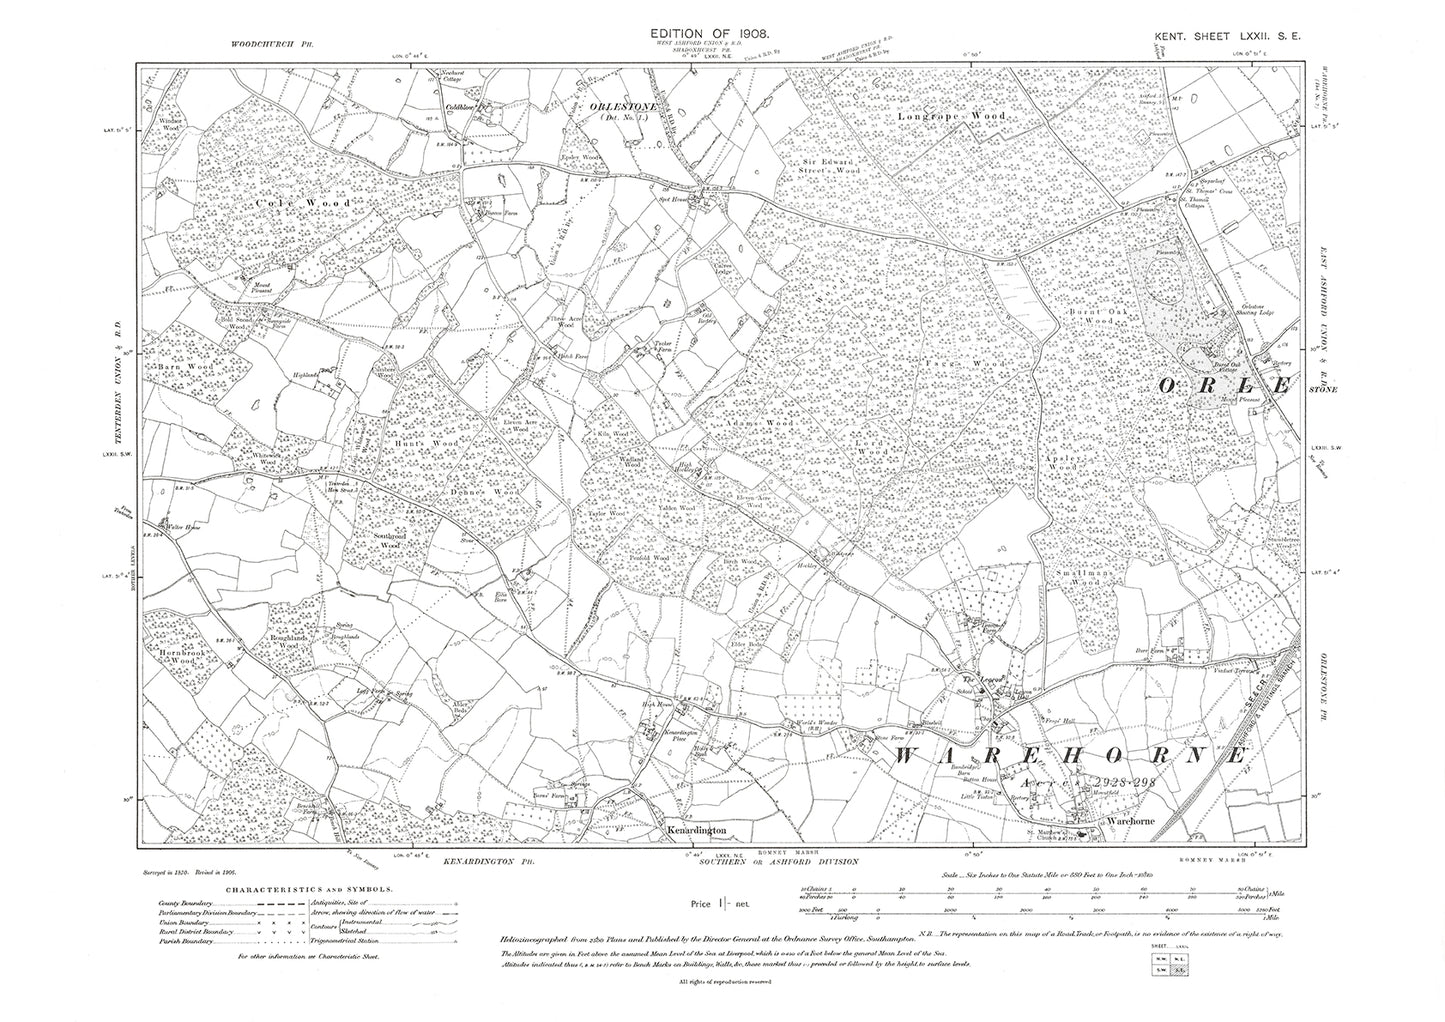 Warehorne, old map Kent 1908: 72SE